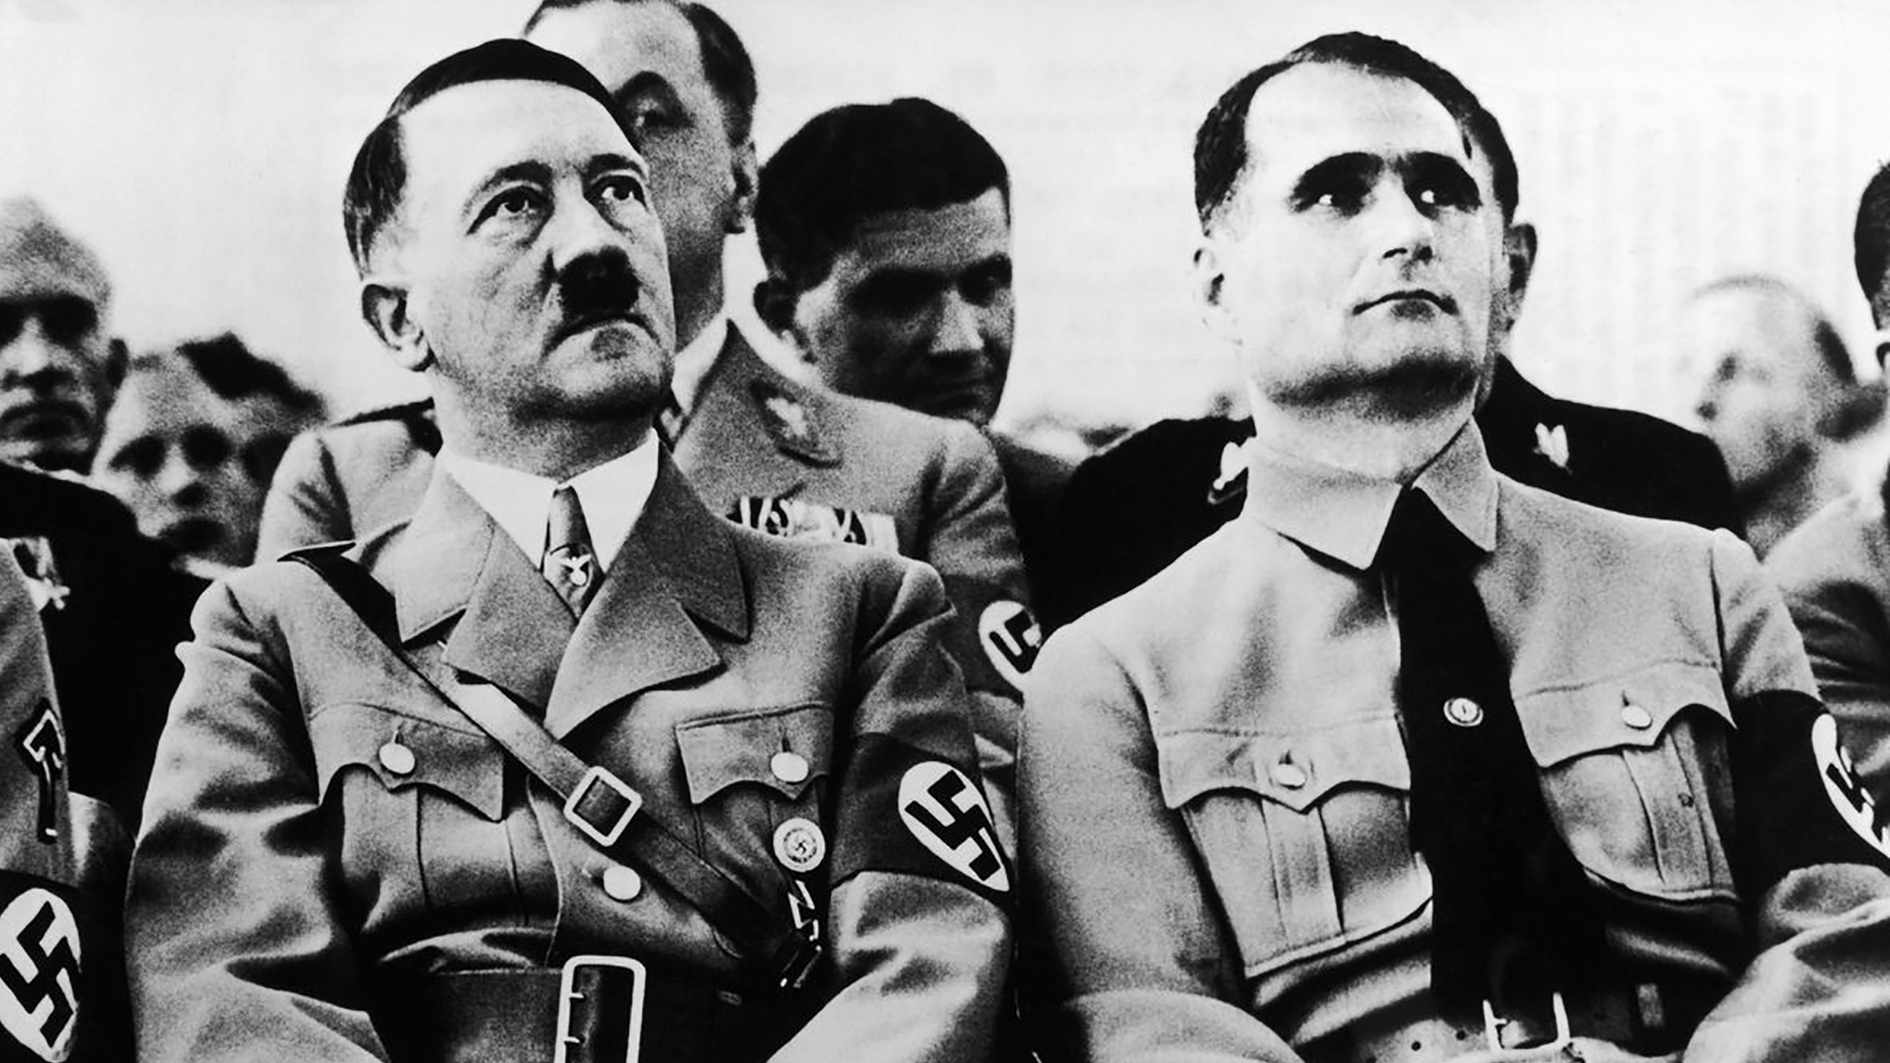 Colgado de un cable atado a una ventana: así murió Rudolf Hess, el último nazi que sentía fascinación por Hitler